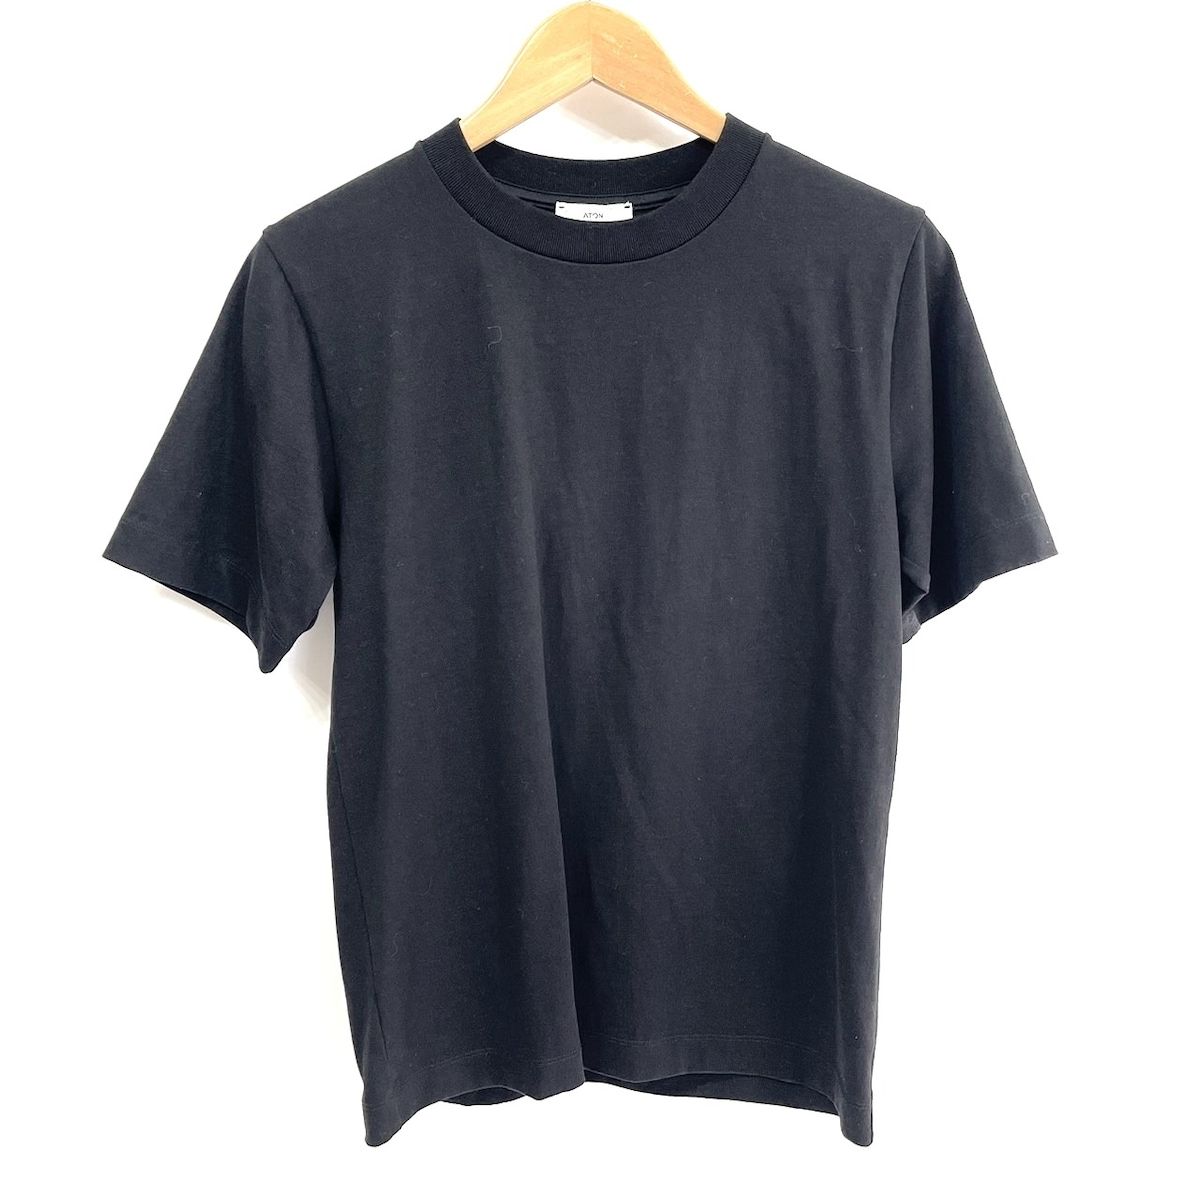 ATON(エイトン) 半袖Tシャツ サイズ02 M レディース美品 - 黒 クルー 